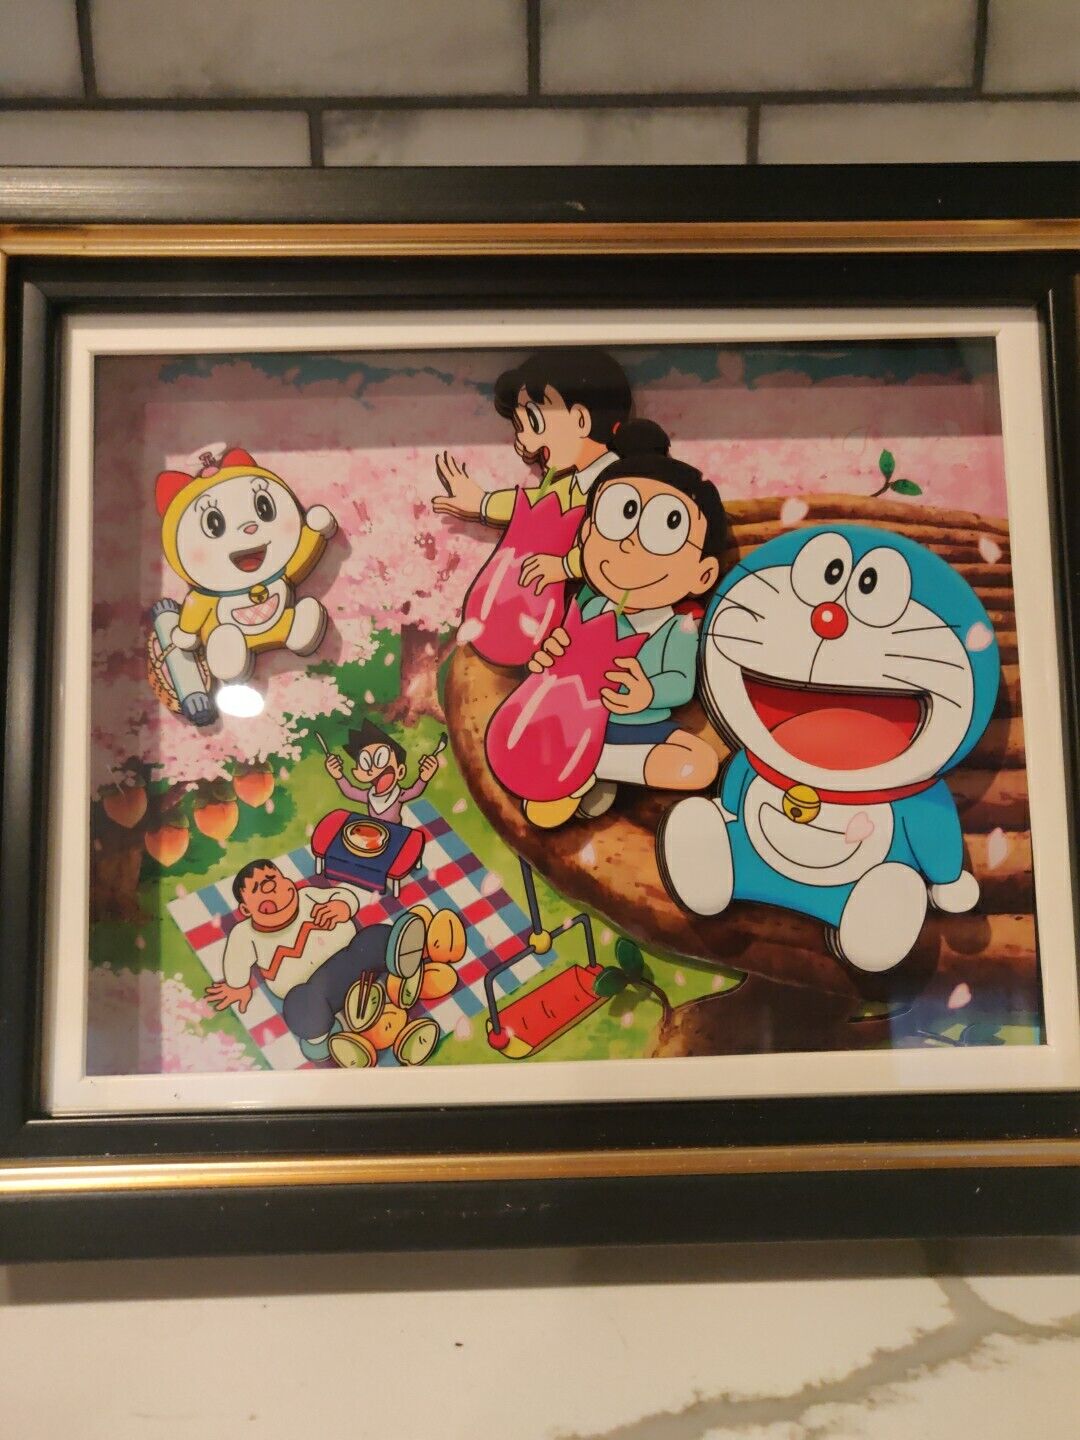 Doraemon 3D Frame Paper Art 7.5 by 9 inch